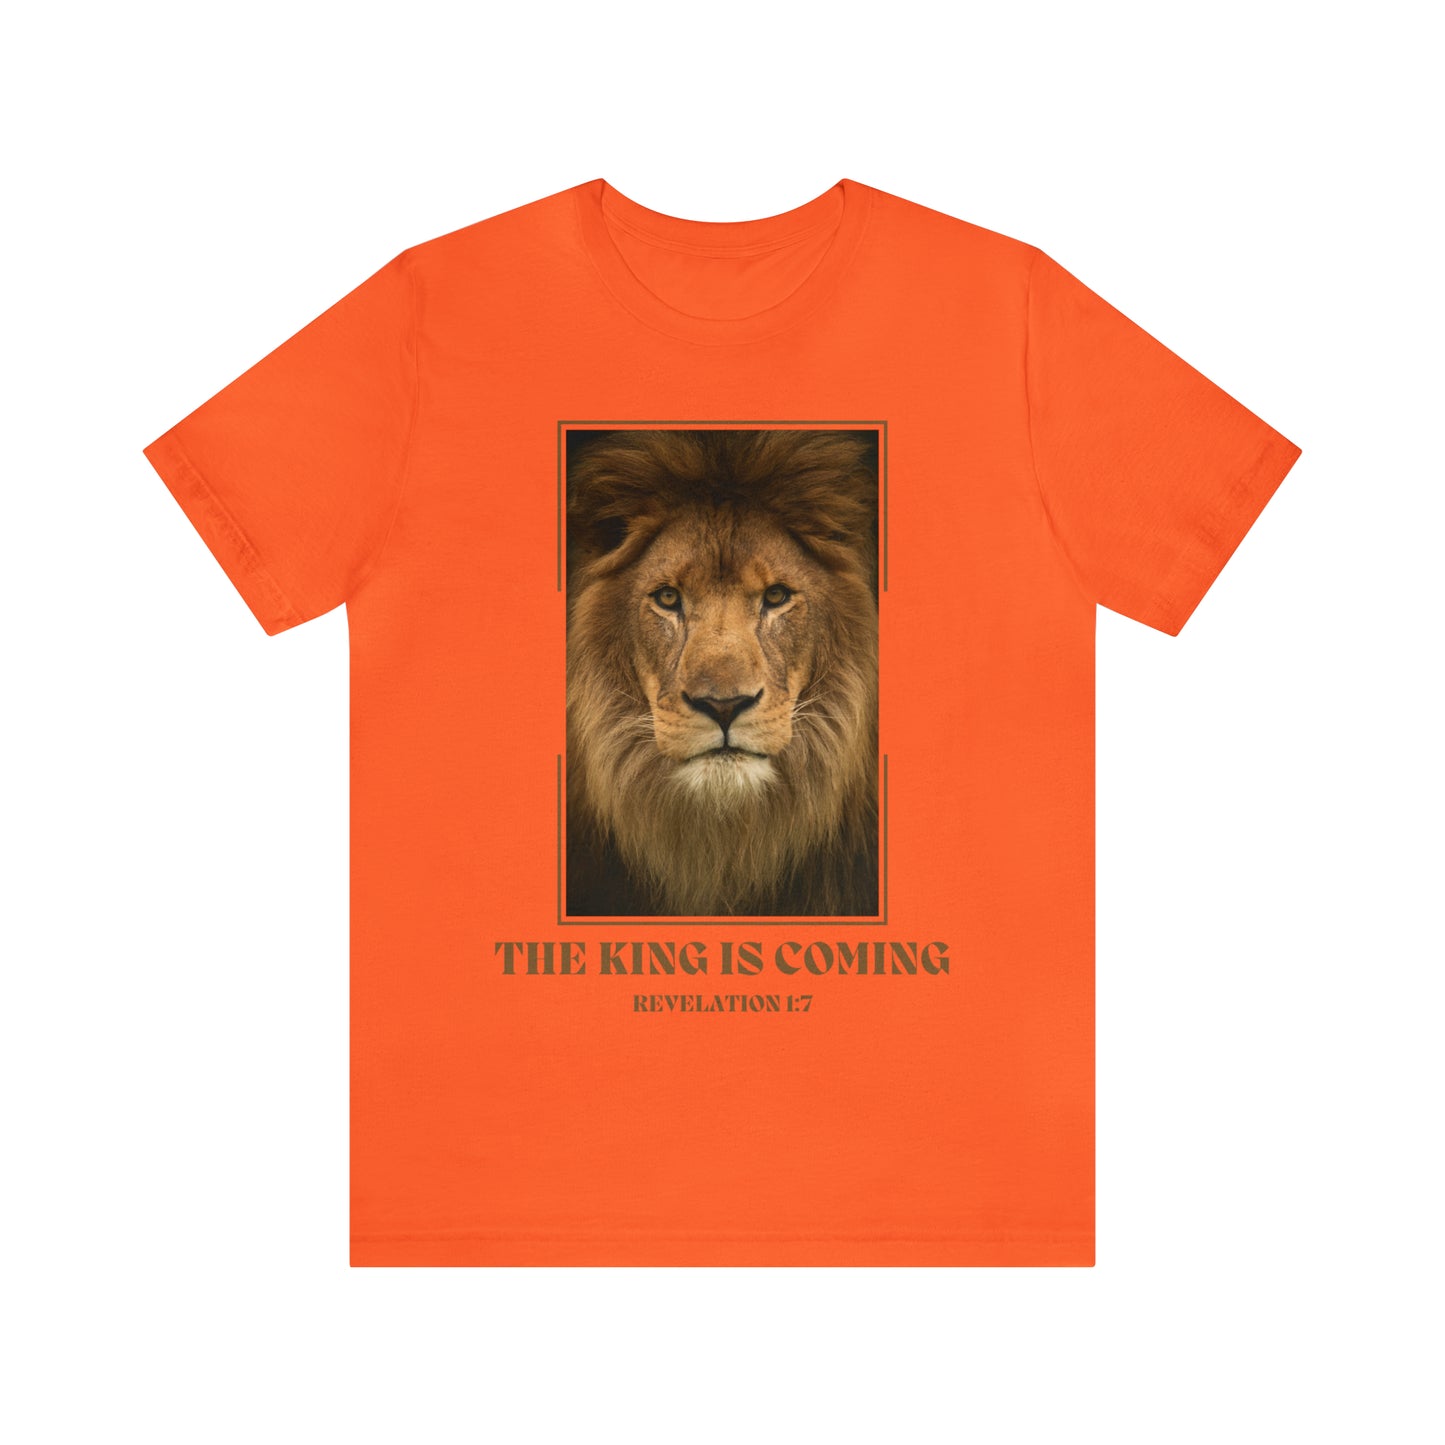 aslan shirt